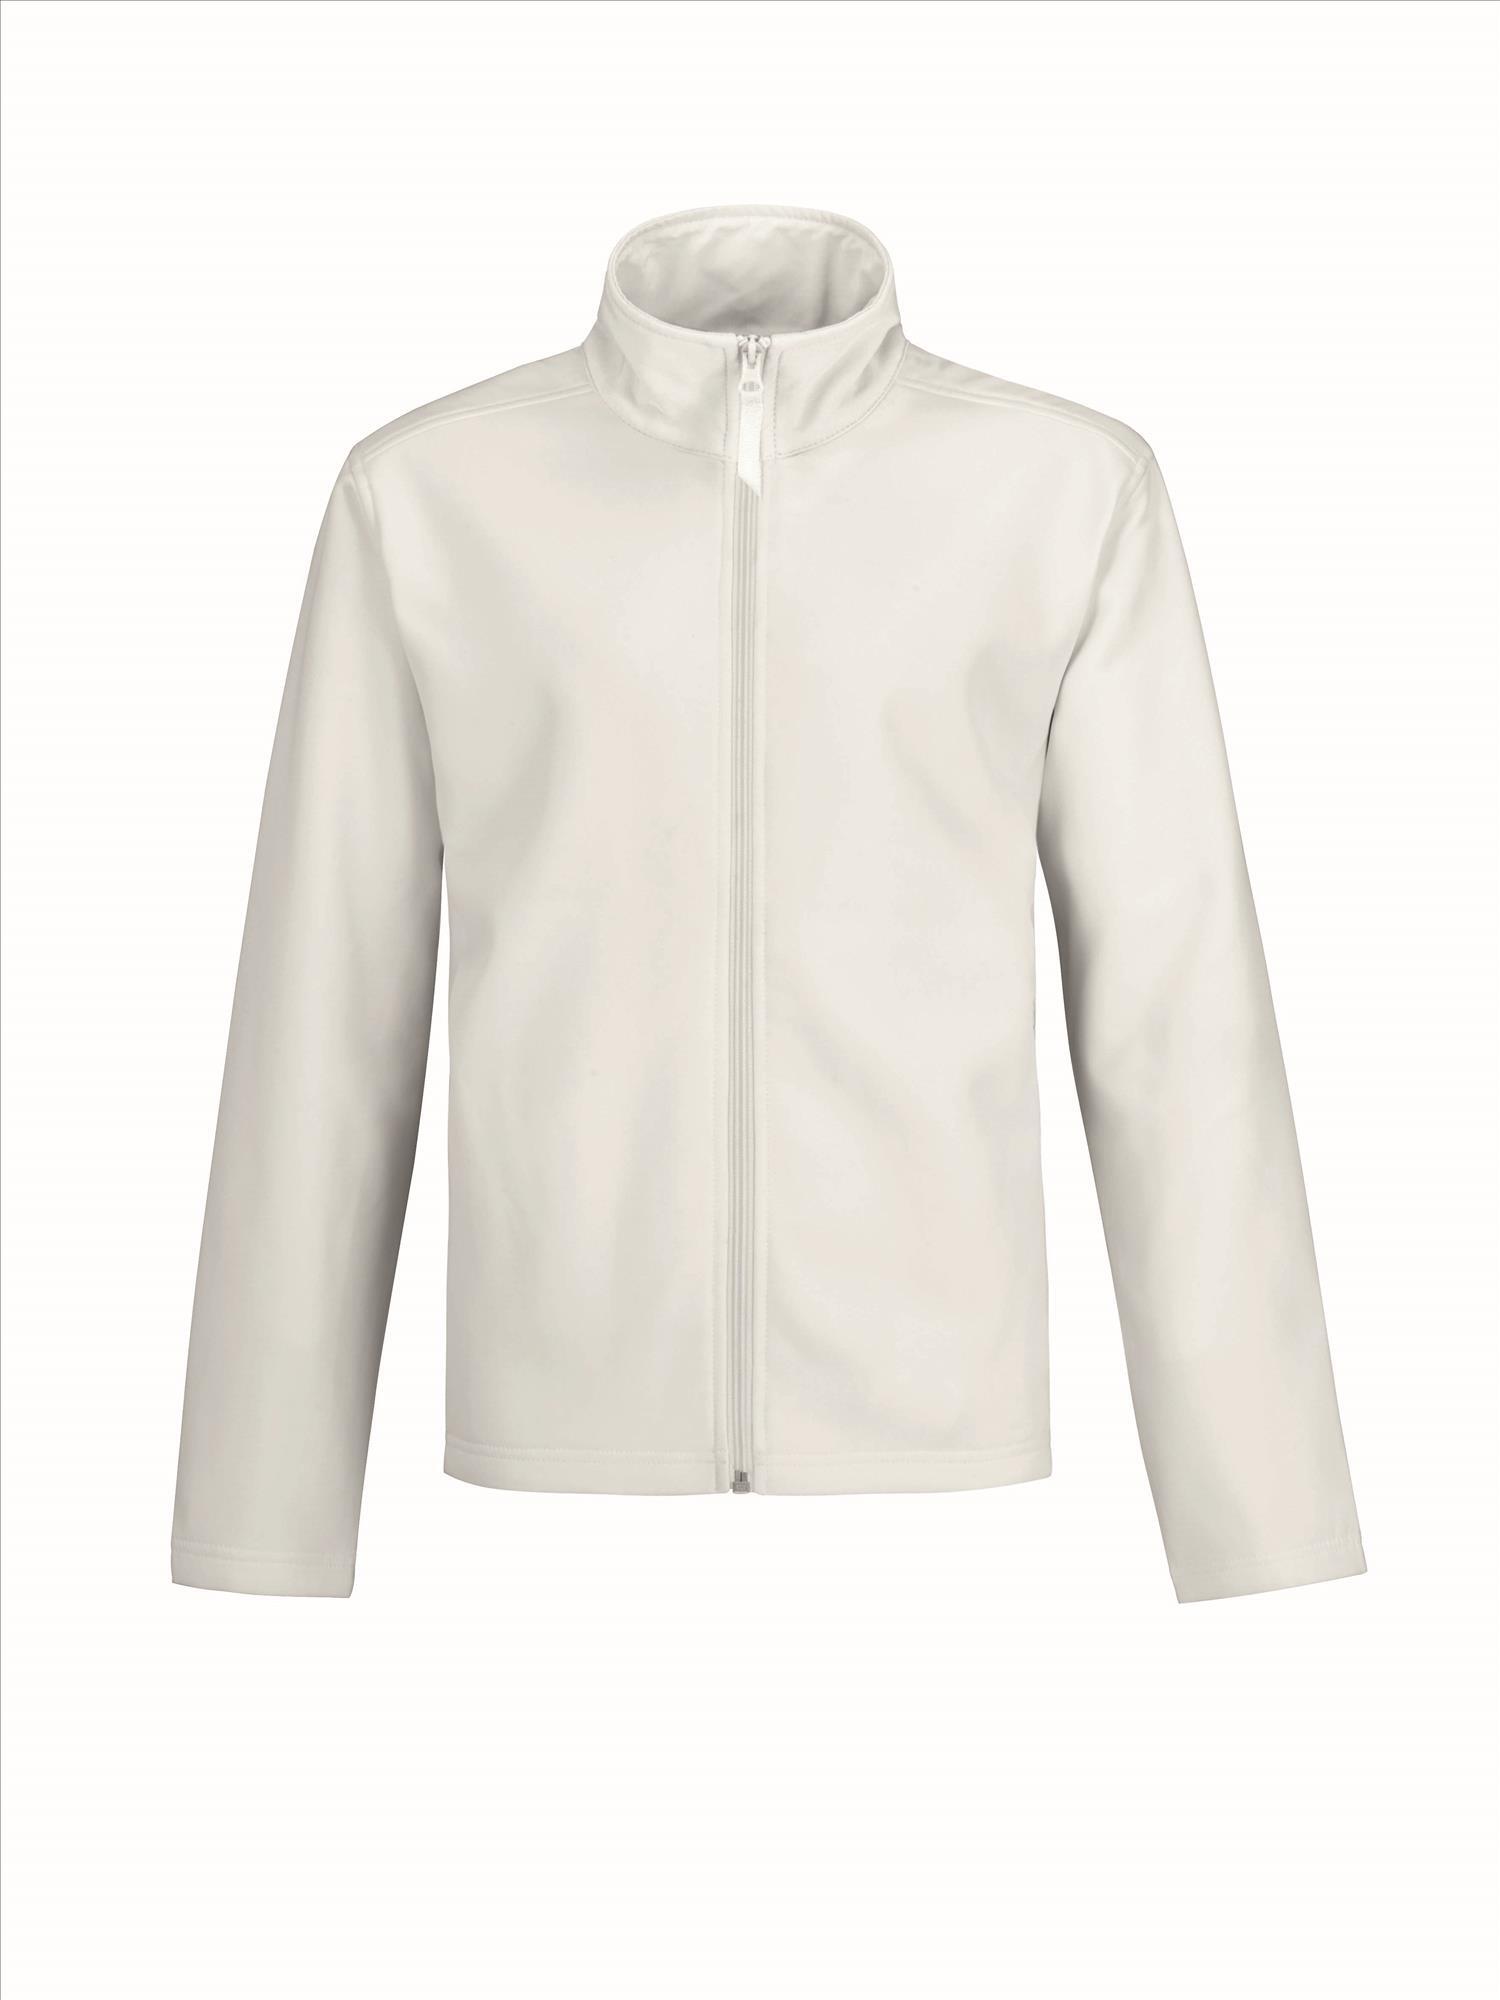 Softshell jas wit voor hem te personaliseren bedrukbaar